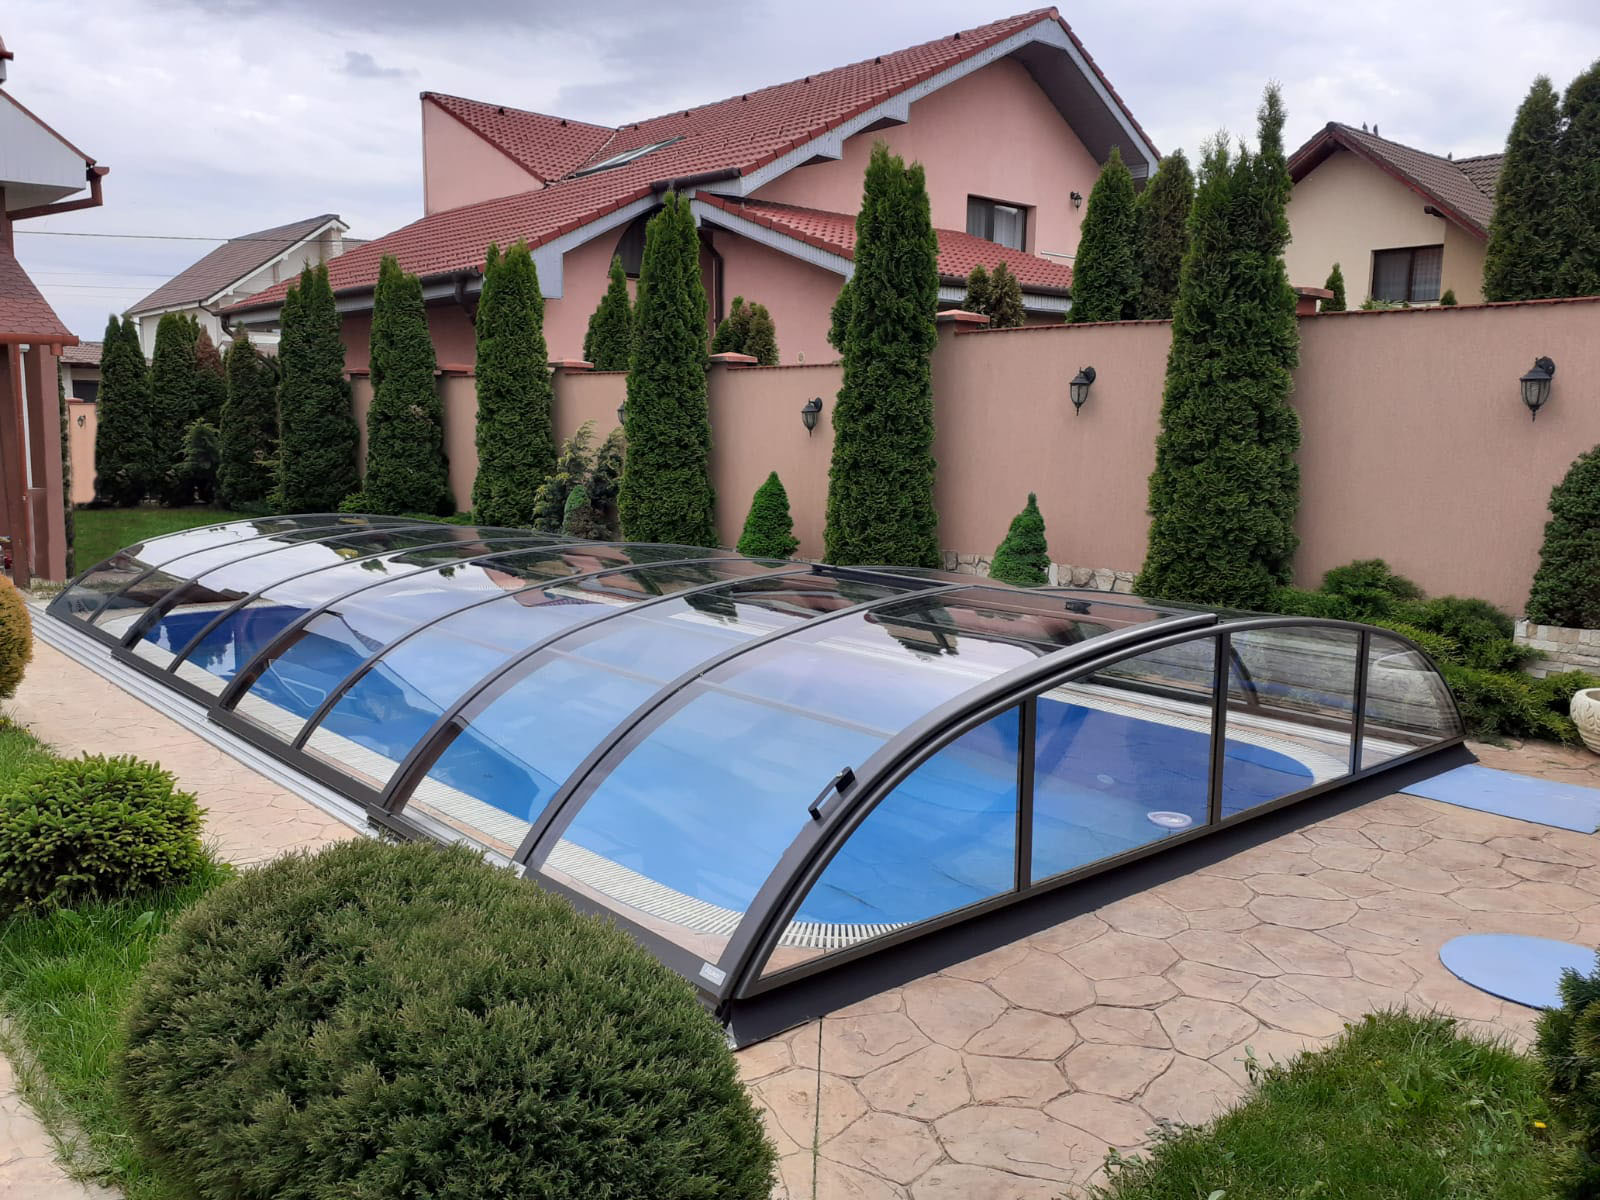 Poolüberdachung Azure Flat Compact 7,70 x 4,18 x 0,80 m Anthrazit Bausatz Selbstmontage Einstieg links